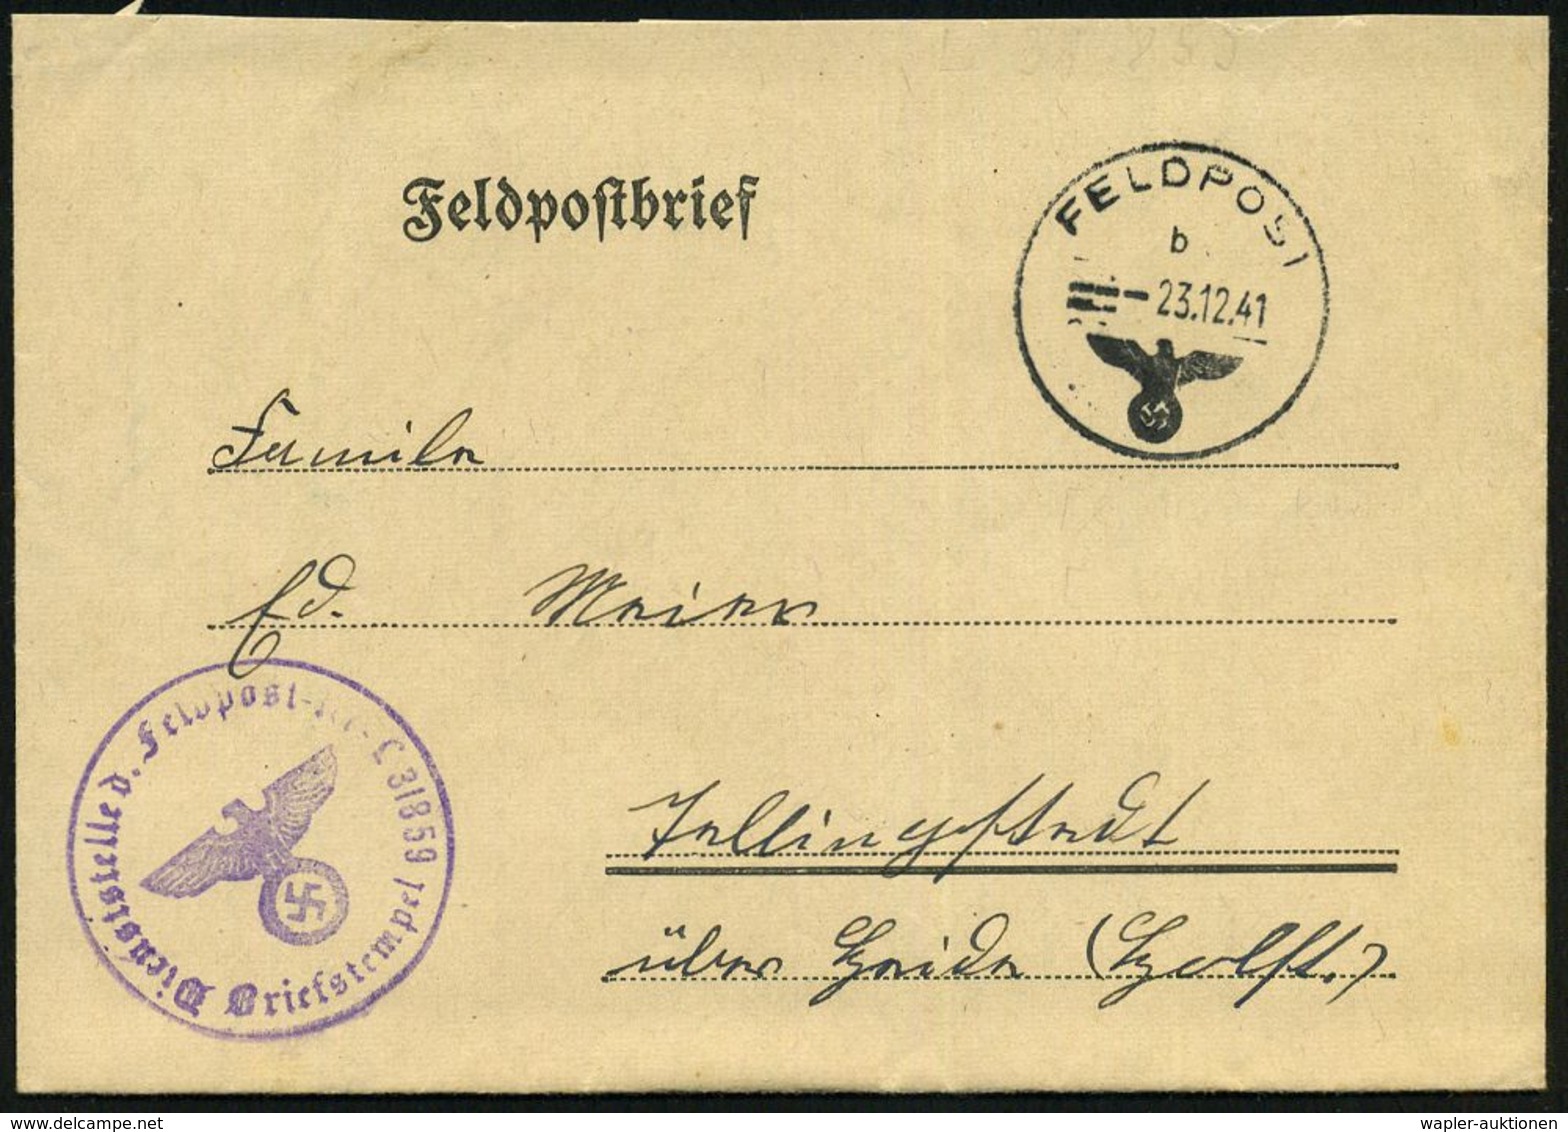 FLIEGERHORST / MILITÄRFLUGHAFEN : DT.BES.FRANKREICH 1941 (23.12.) 1K: FELDPOST/b/--- + Viol. 1K-HdN: Feldpostnr. L 31859 - Aerei